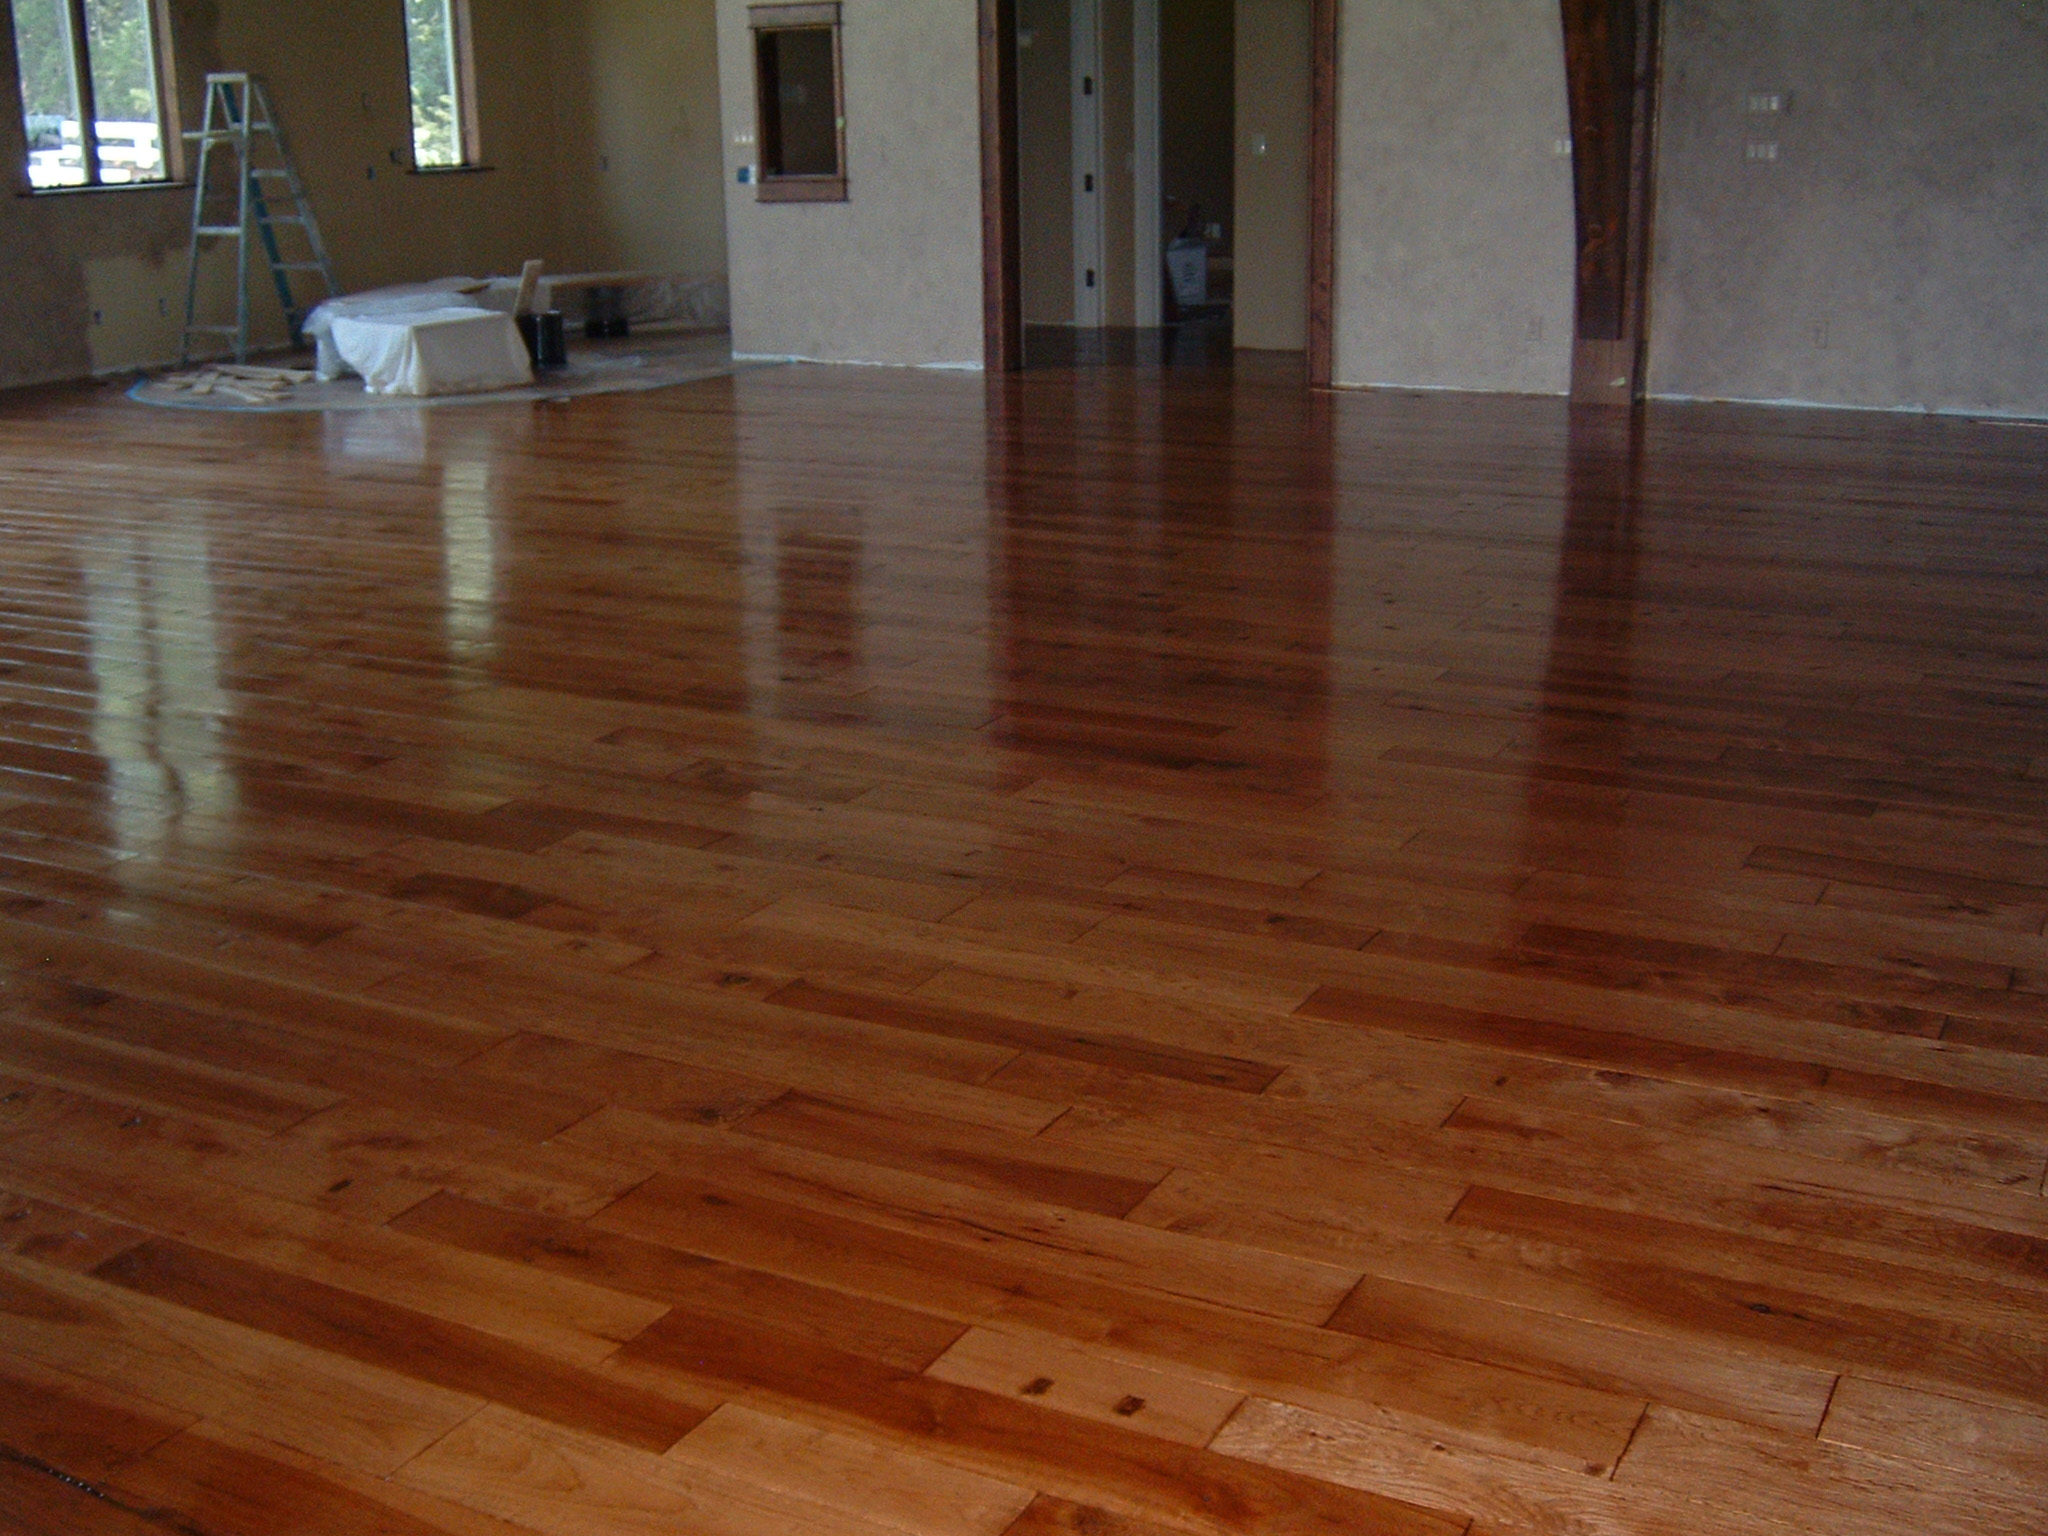 Ozark Hardwood Flooring, How To Keep Furniture From Moving On Hardwood Floors